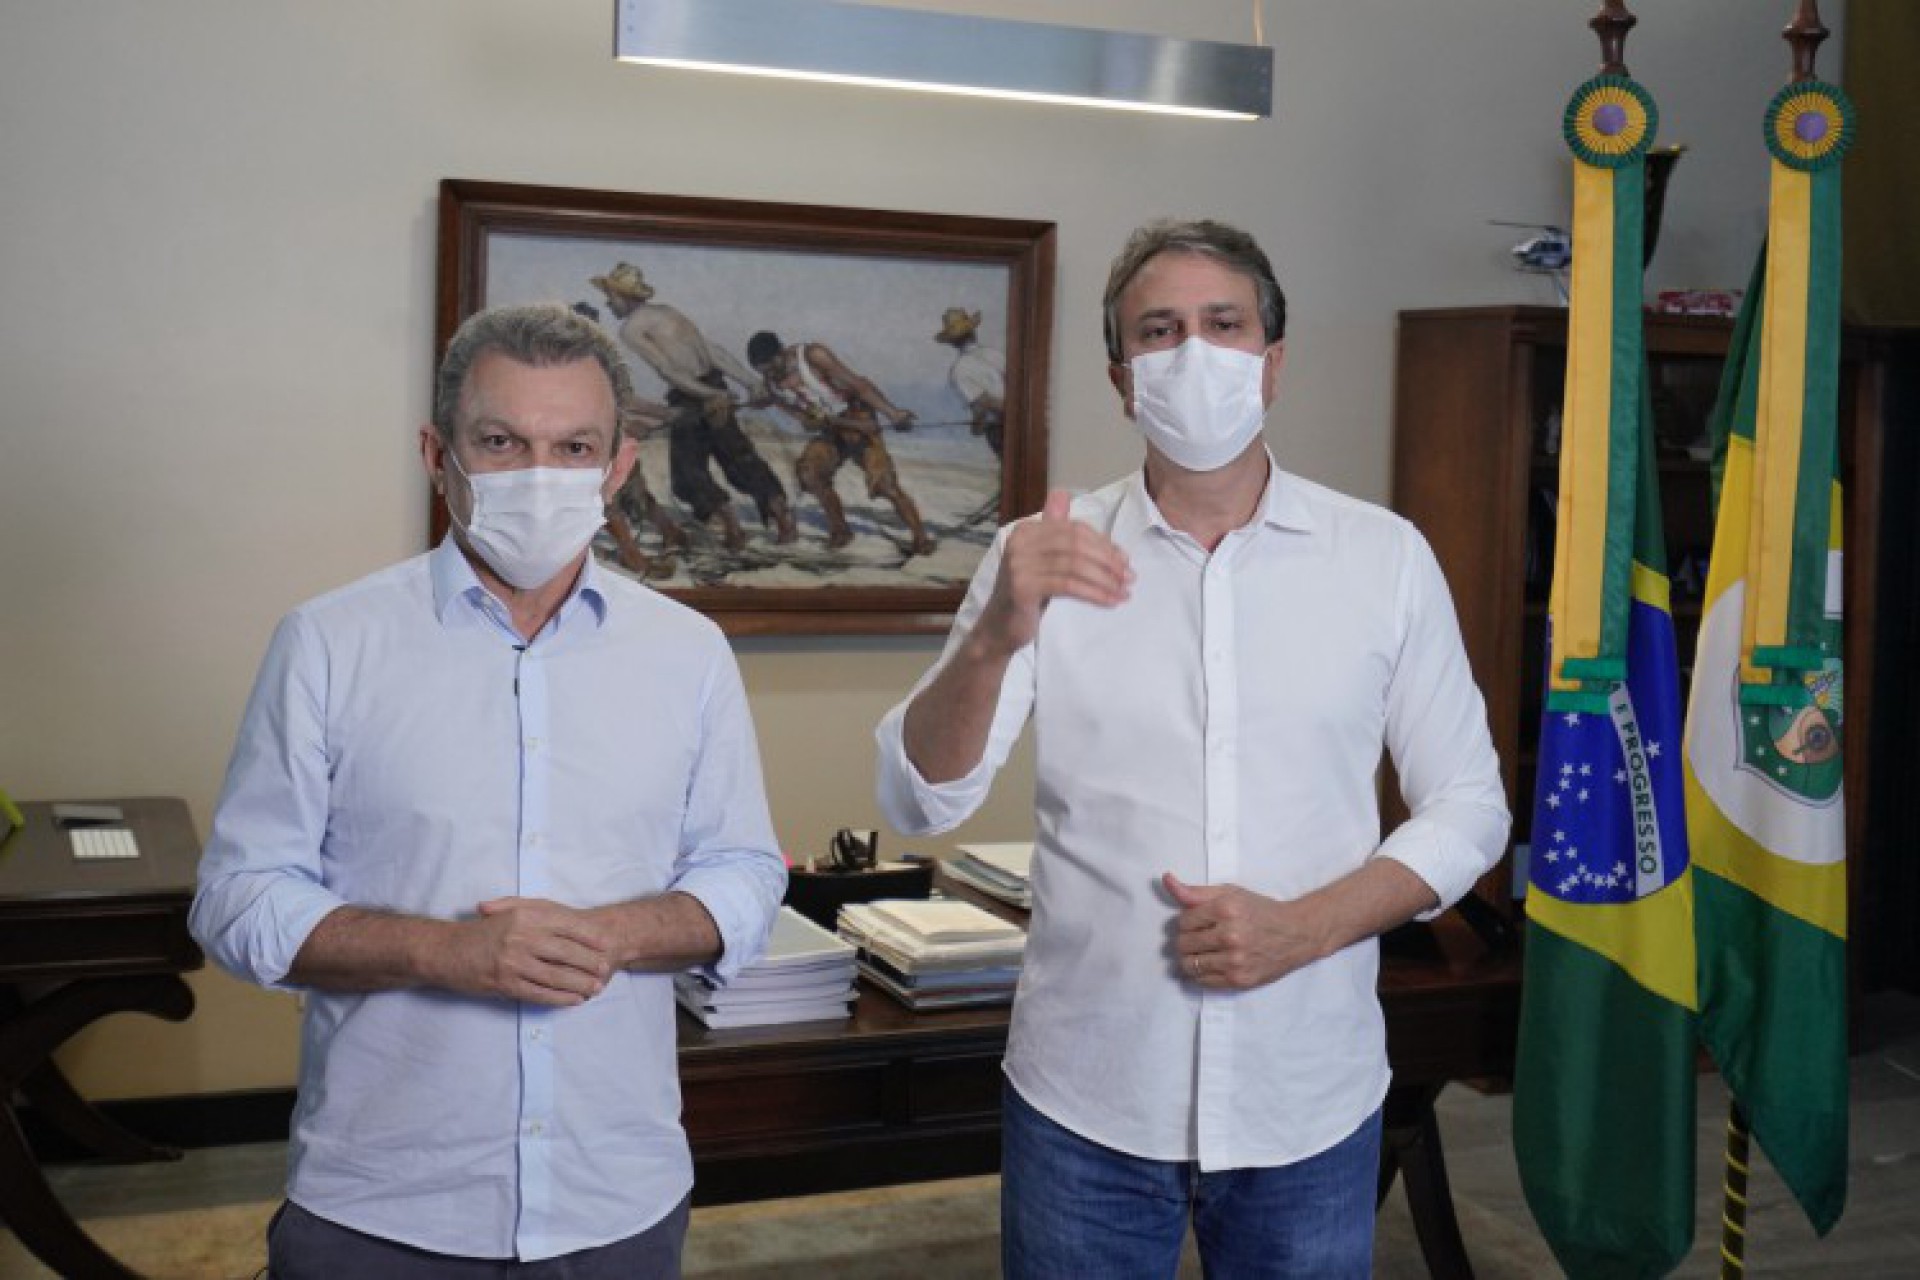 Governador Camilo Santana e o prefeito de Fortaleza José Sarto prestaram solidariedade às famílias das vítimas (Foto: Jose Wagner / Governo do Estado do Ceará)